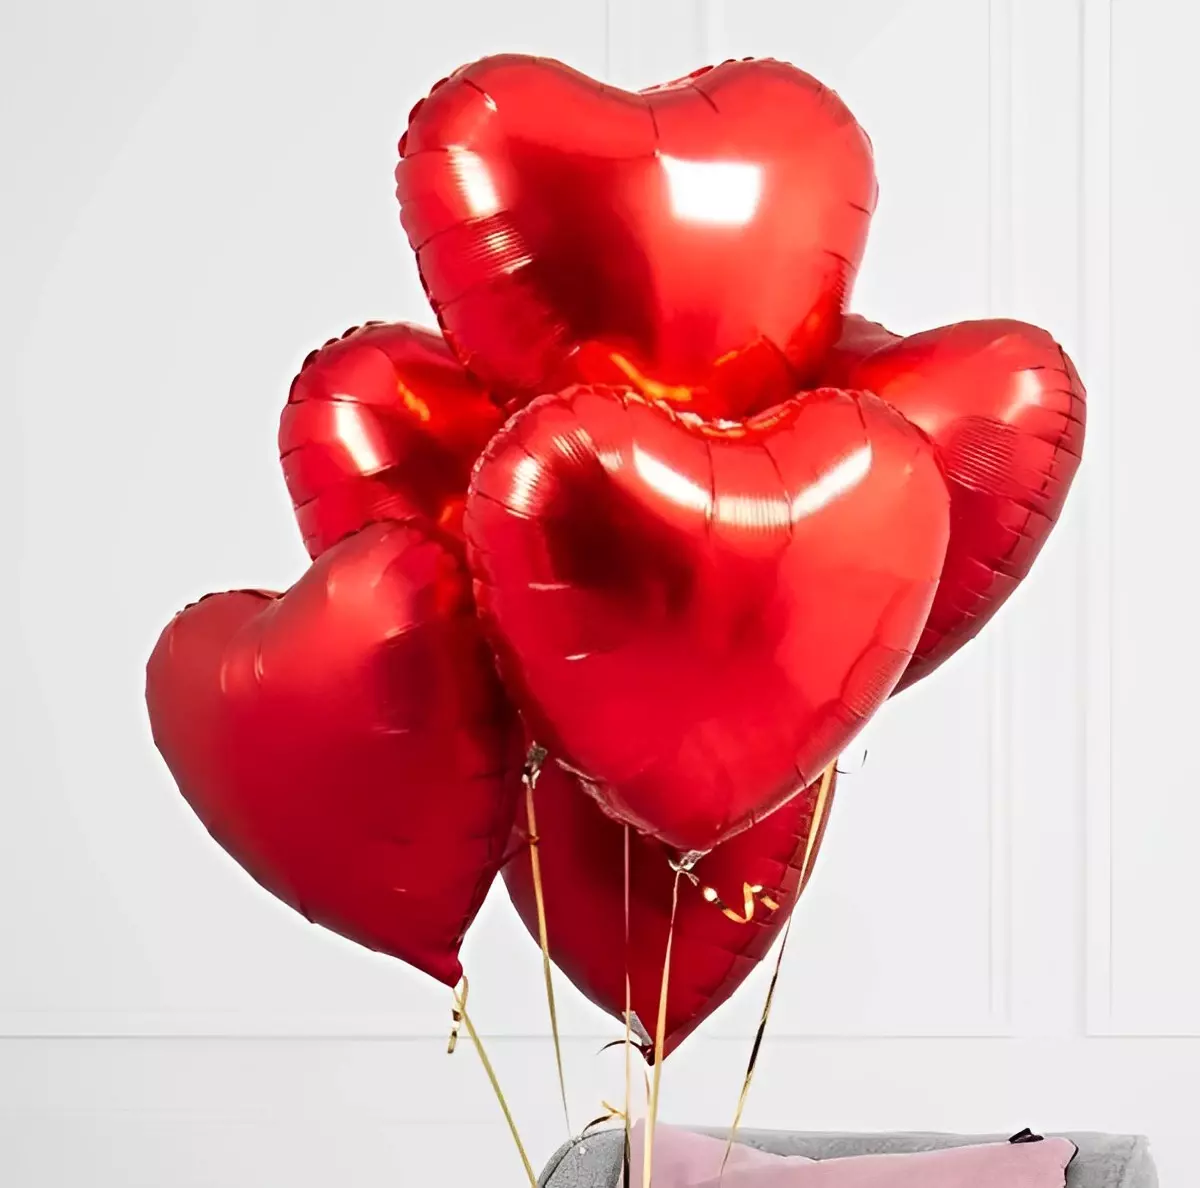 des ballons rouges en forme de cœurs attaches audessus du lit sur fond blanc